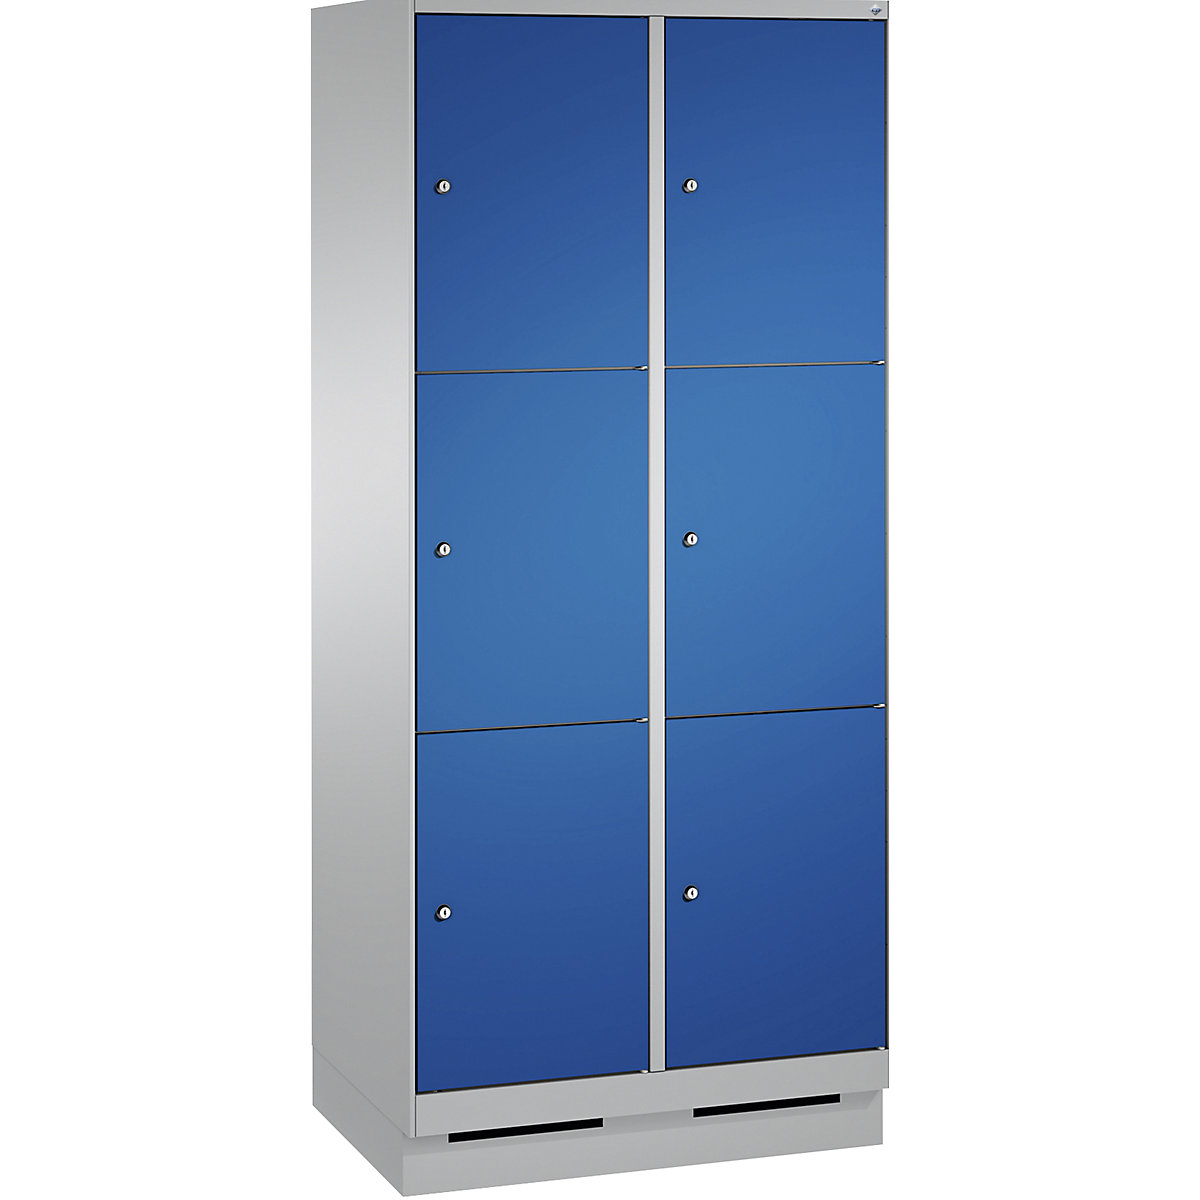 Armoire à casiers sur socle EVOLO – C+P, 2 compartiments, 3 casiers chacun, largeur compartiments 400 mm, aluminium / bleu gentiane-4